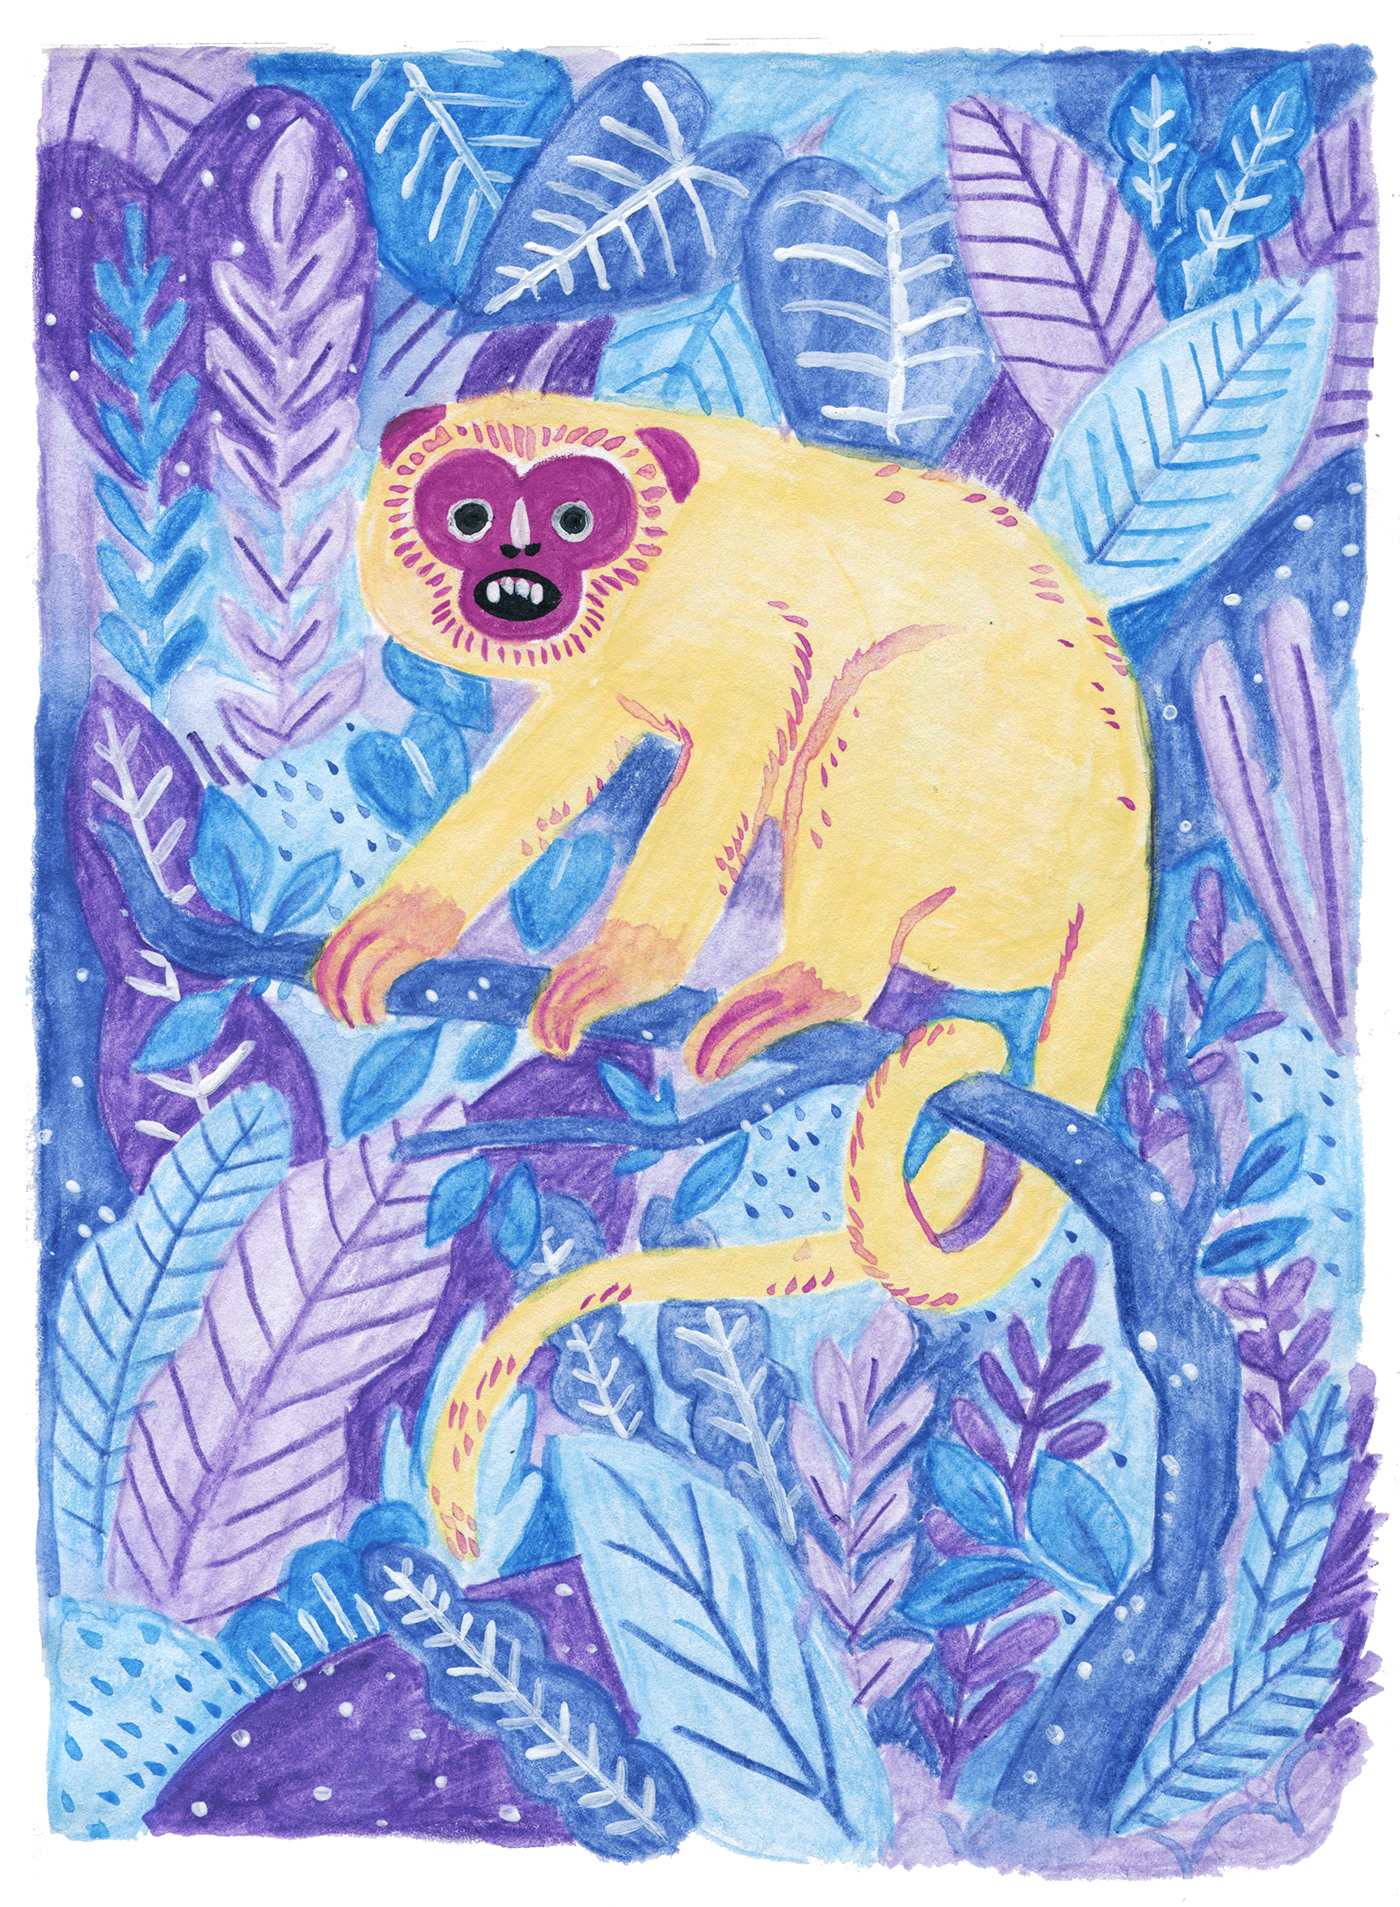 watercolor animals jungle Nature bookillustration children's book